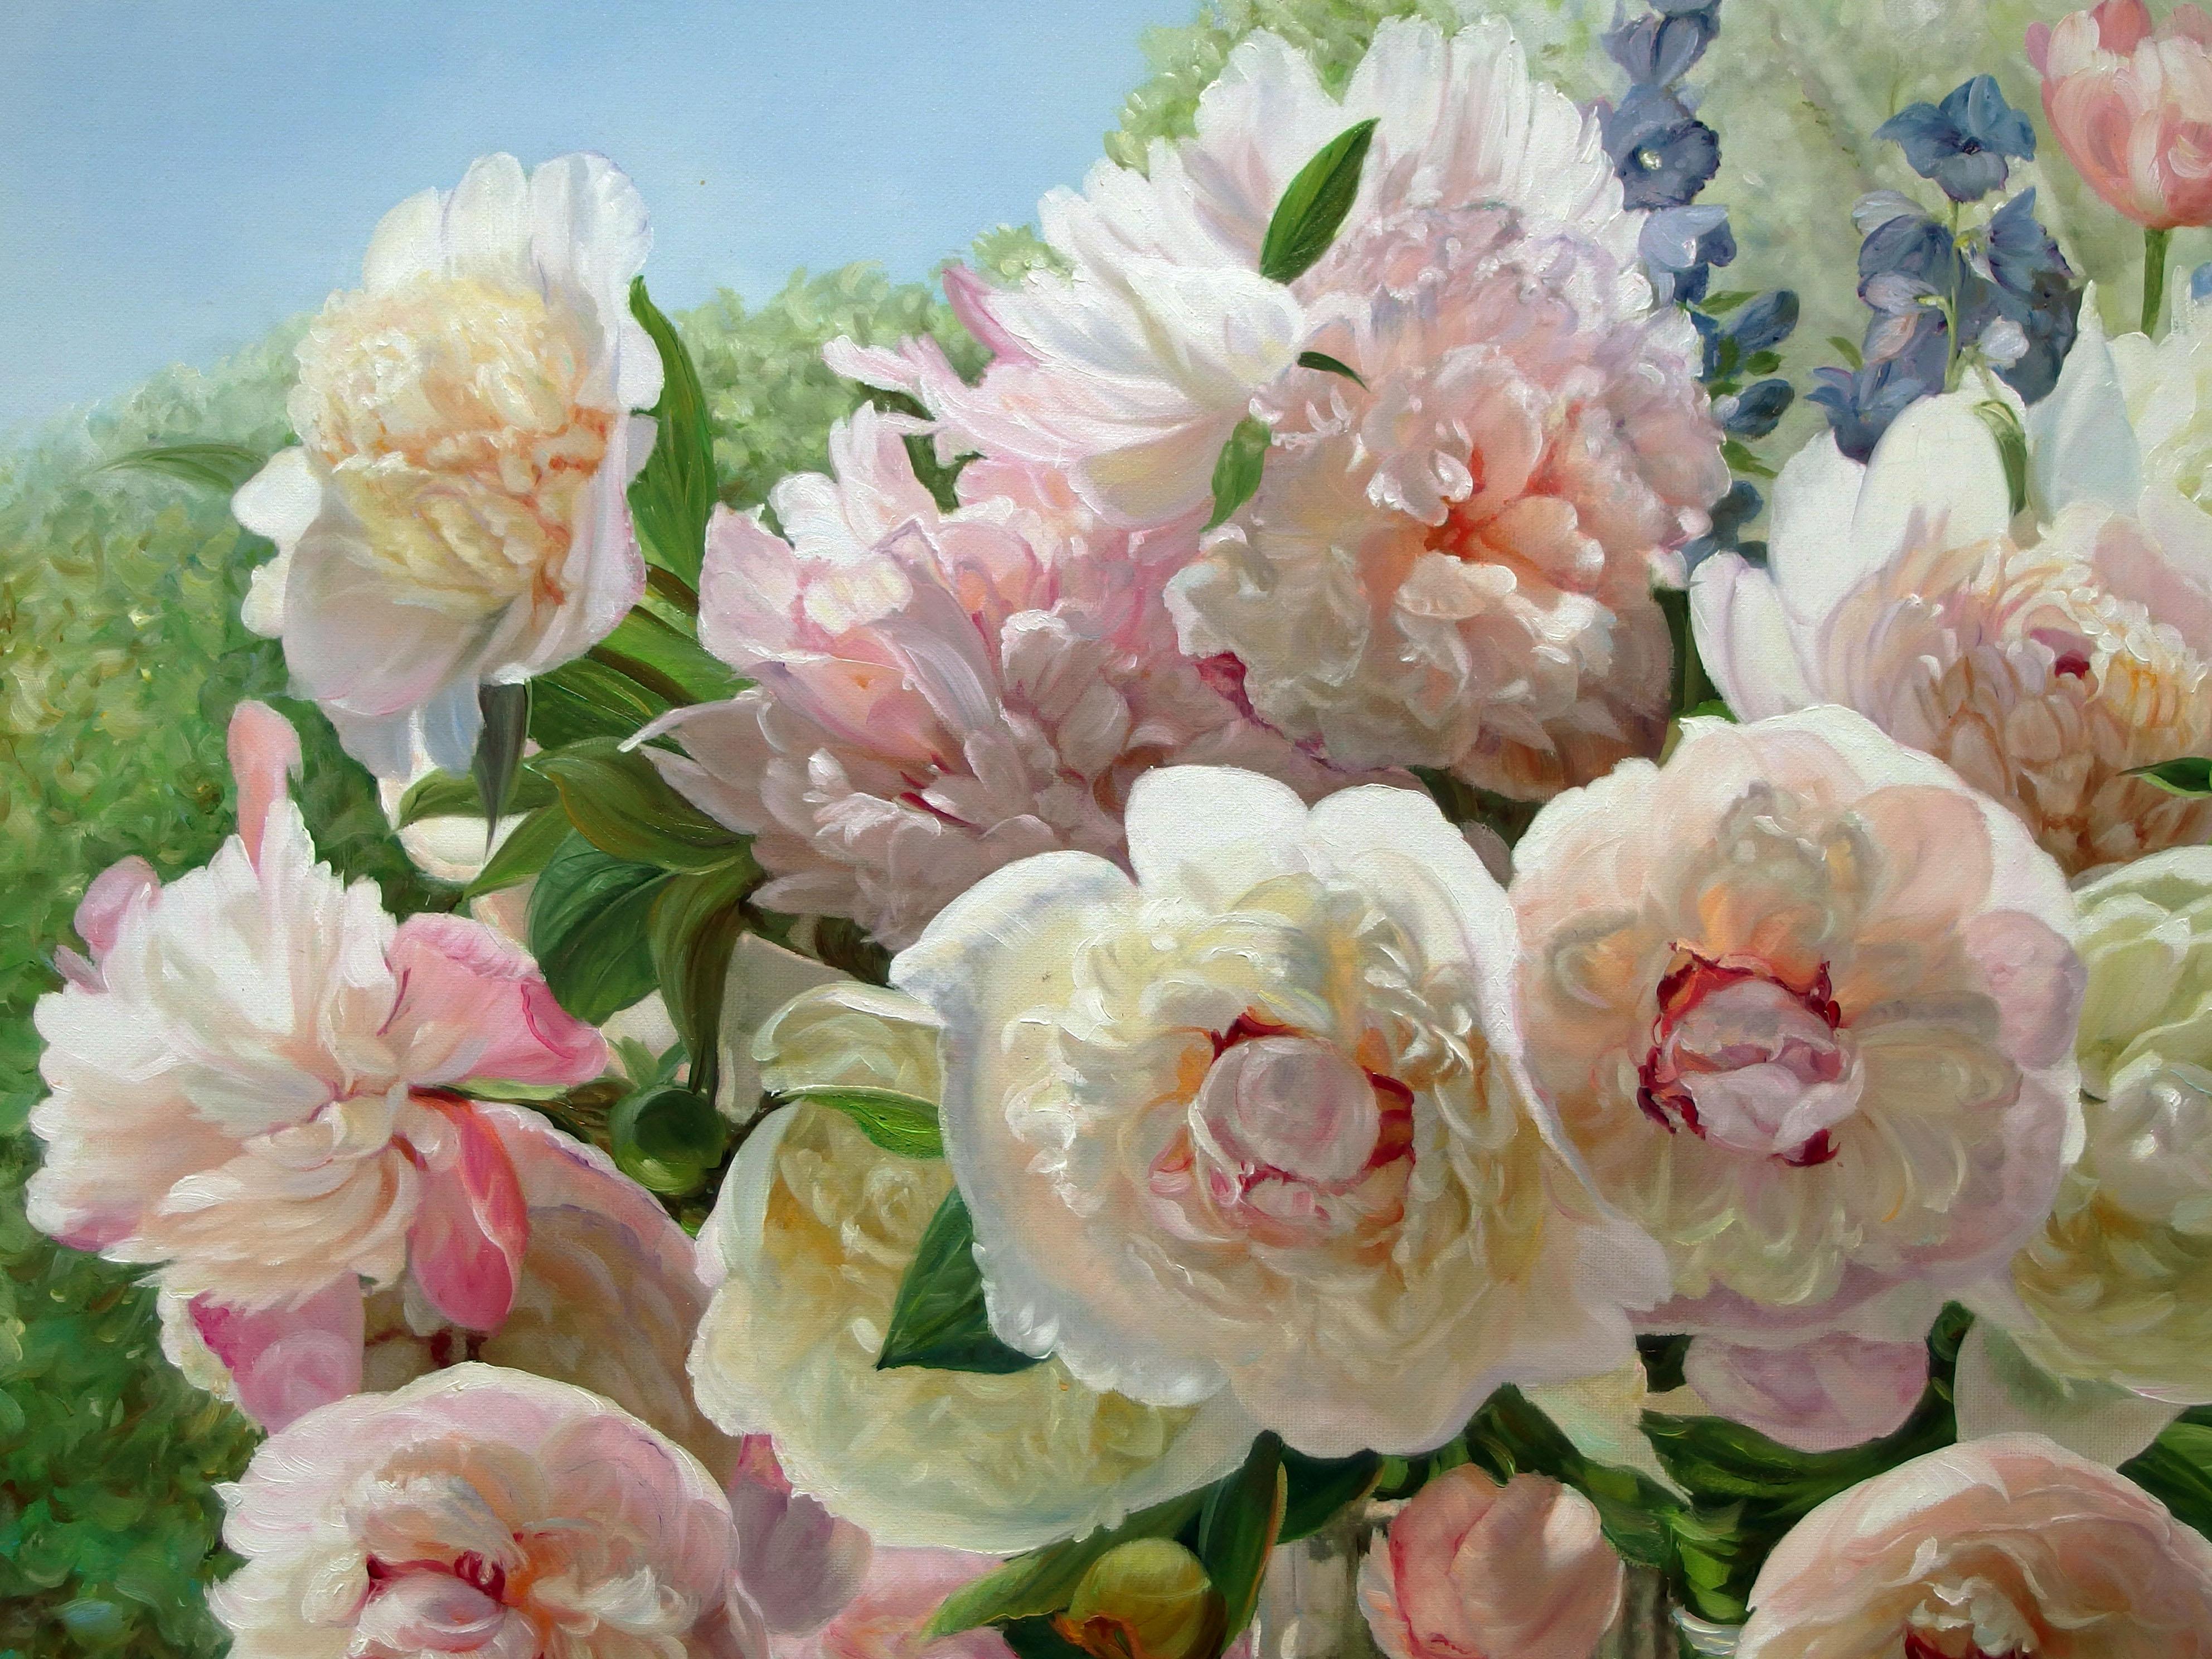 Peonies blanches et roses dans la fenêtre - Réalisme Painting par Zbigniew Kopania